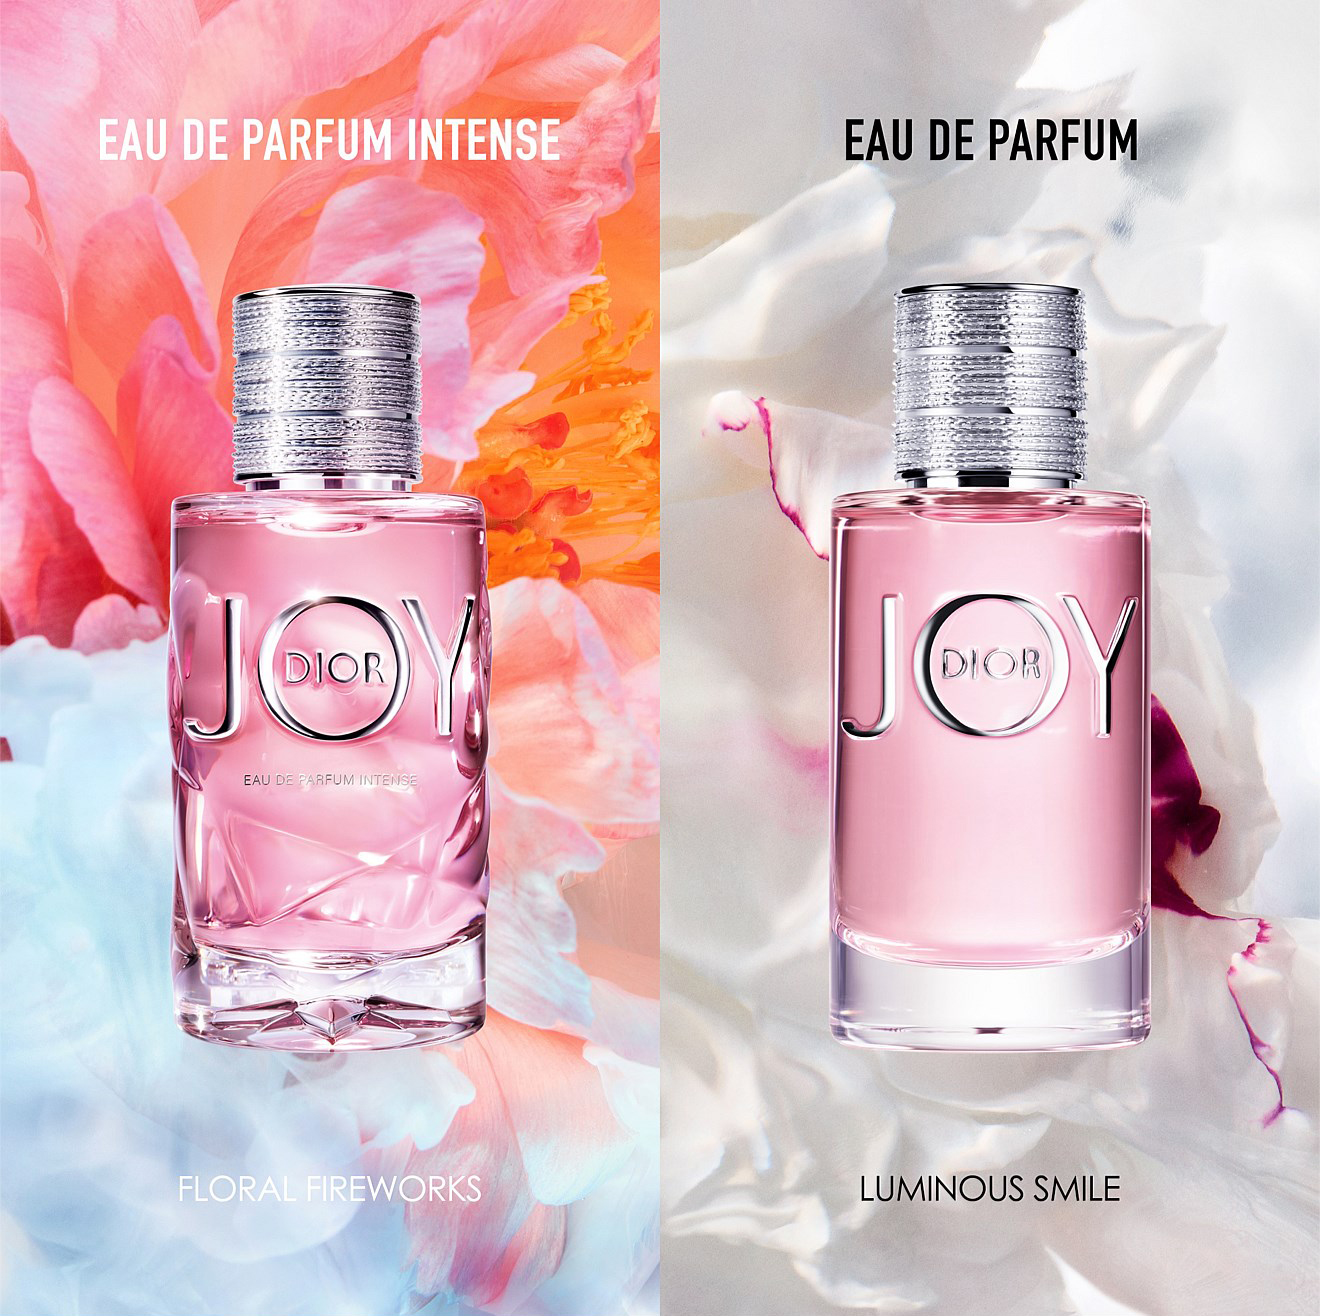 แพ็คคู่ JOY by Dior Eau de Parfum Intense 1ml กลิ่นหอมที่เป็นดั่งพลุแห่งมวลไม้ จากกลิ่นส้มผสานกับประกายจากกลาสส์โรสและมะลิ เจือด้วยกลิ่นแซนดัลวู้ดและวนิลา